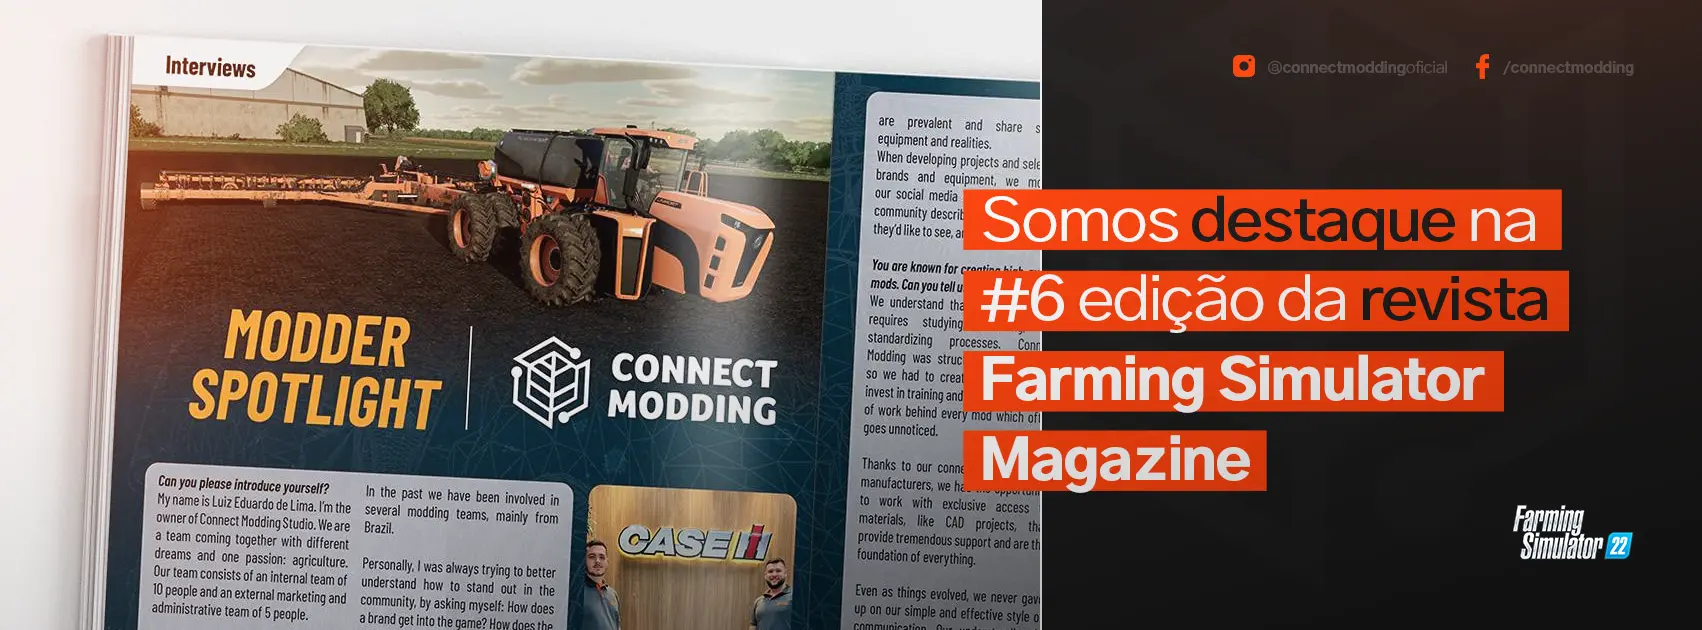 Connect Modding é destaque na #6 edição de Farming Simulator Magazine